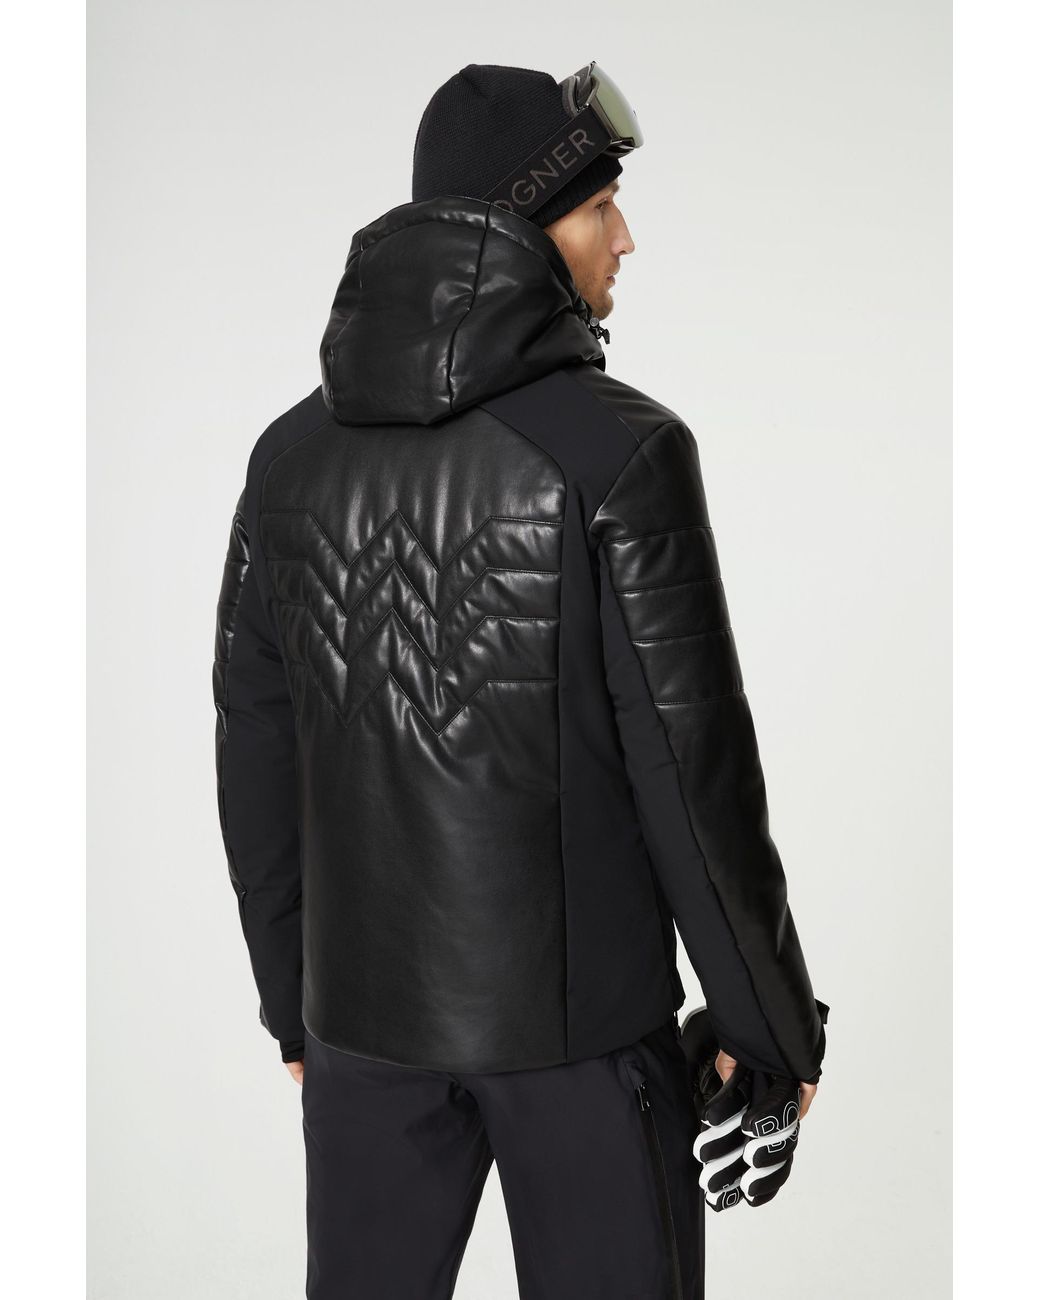 Bogner Jed Leather Ski Jacket in Black for Men | Lyst Canada